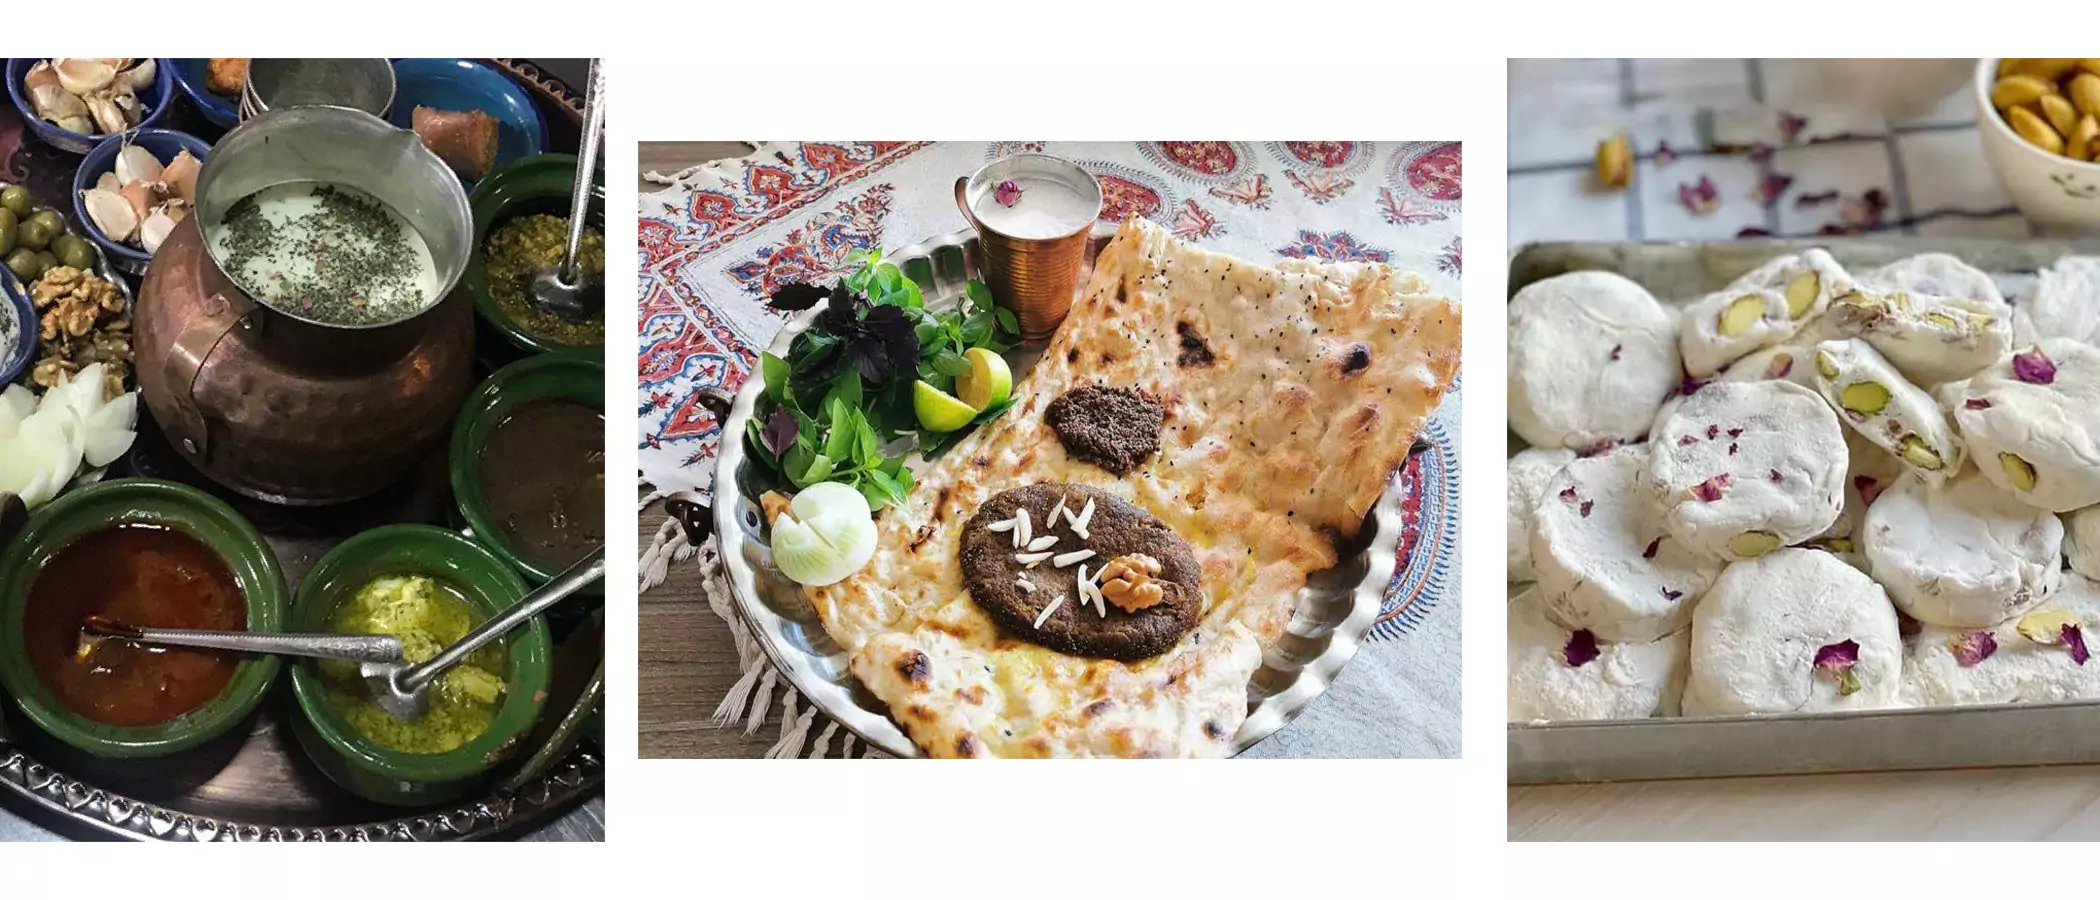 سوغات اصفهان و غذاهای سنتی اصفهان